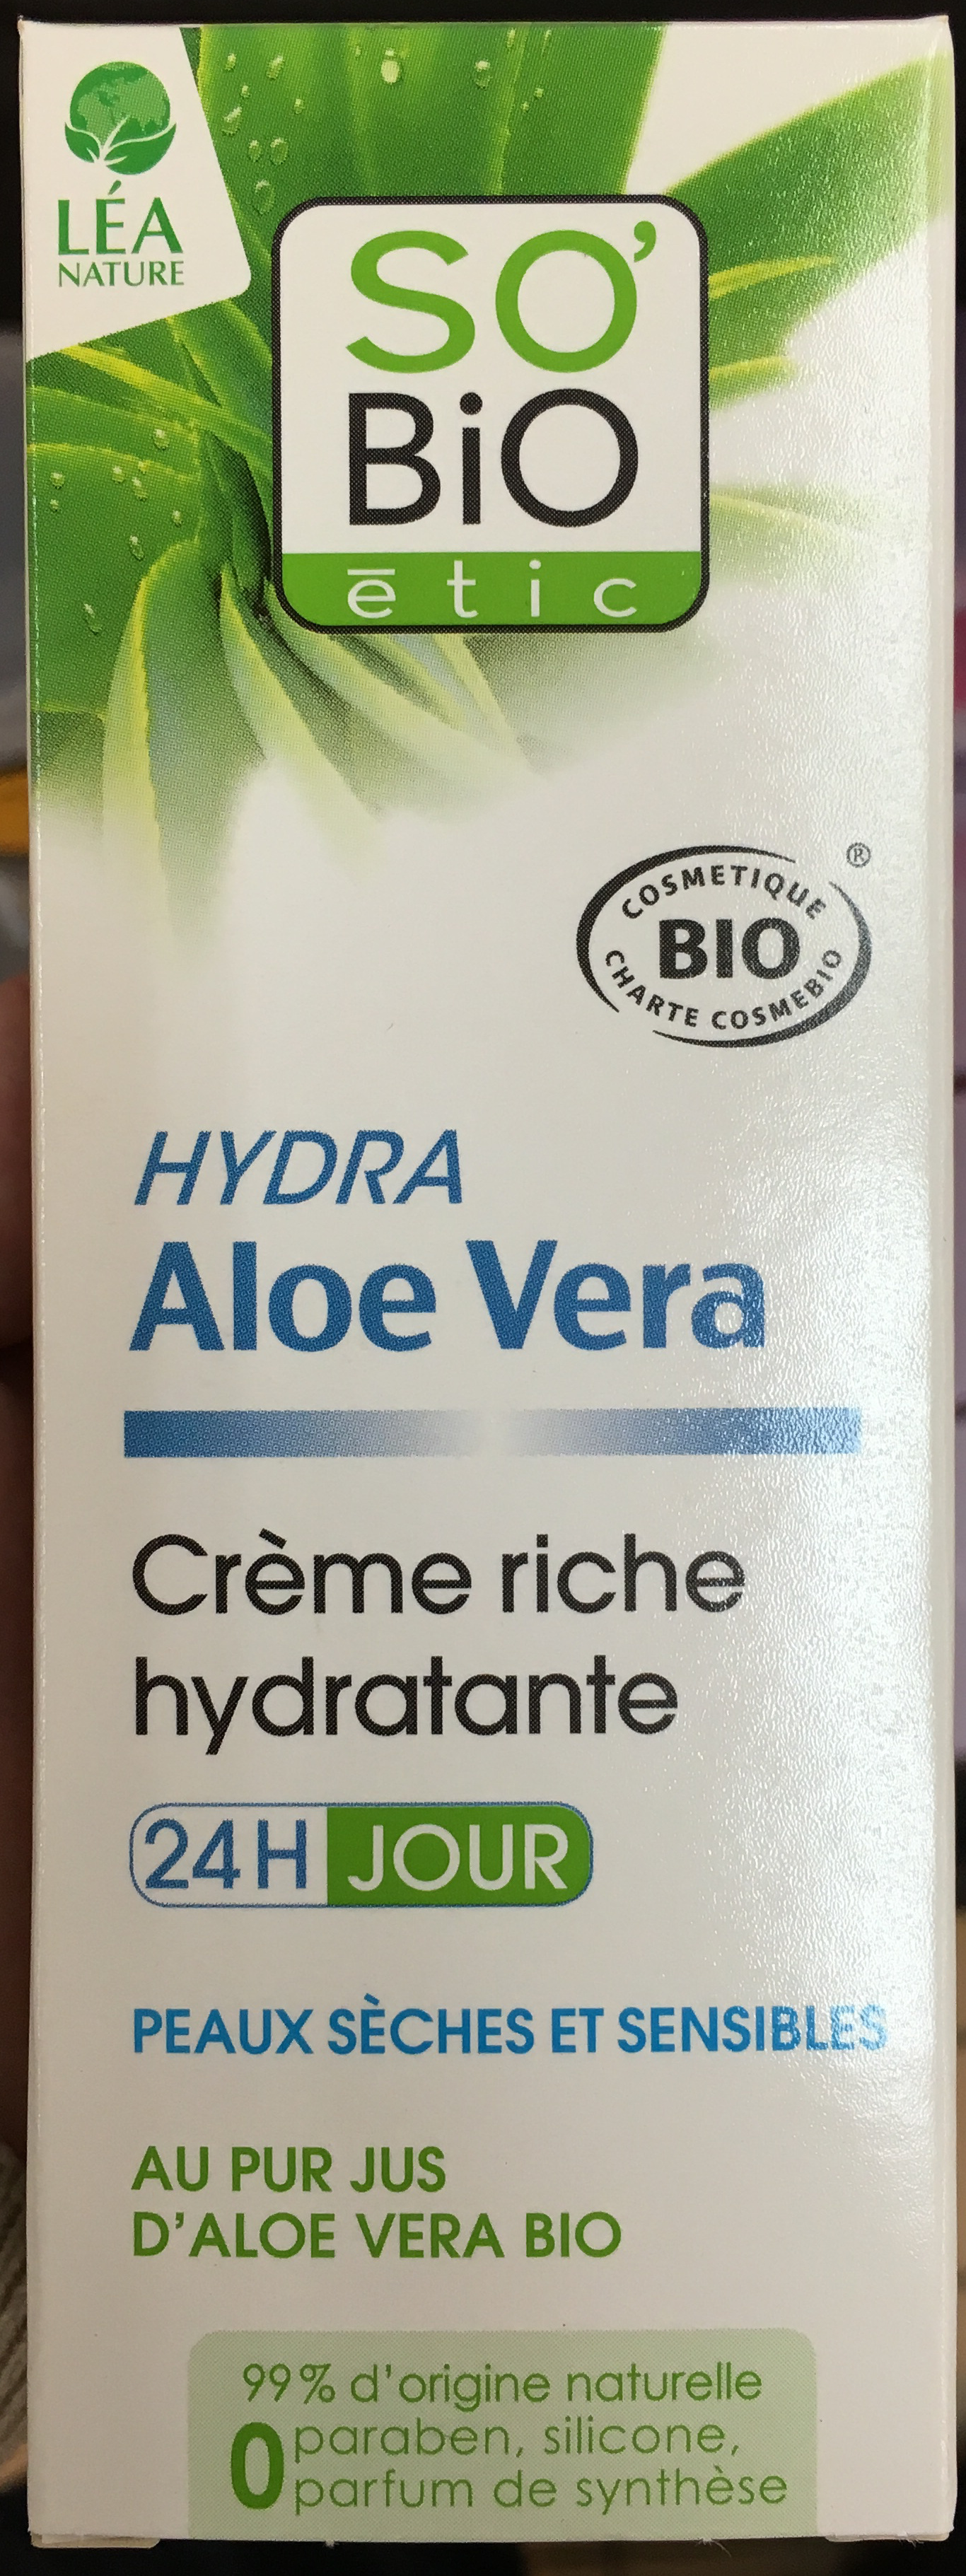 Hydra Aloe Vera Crème riche hydratante - Produit - fr